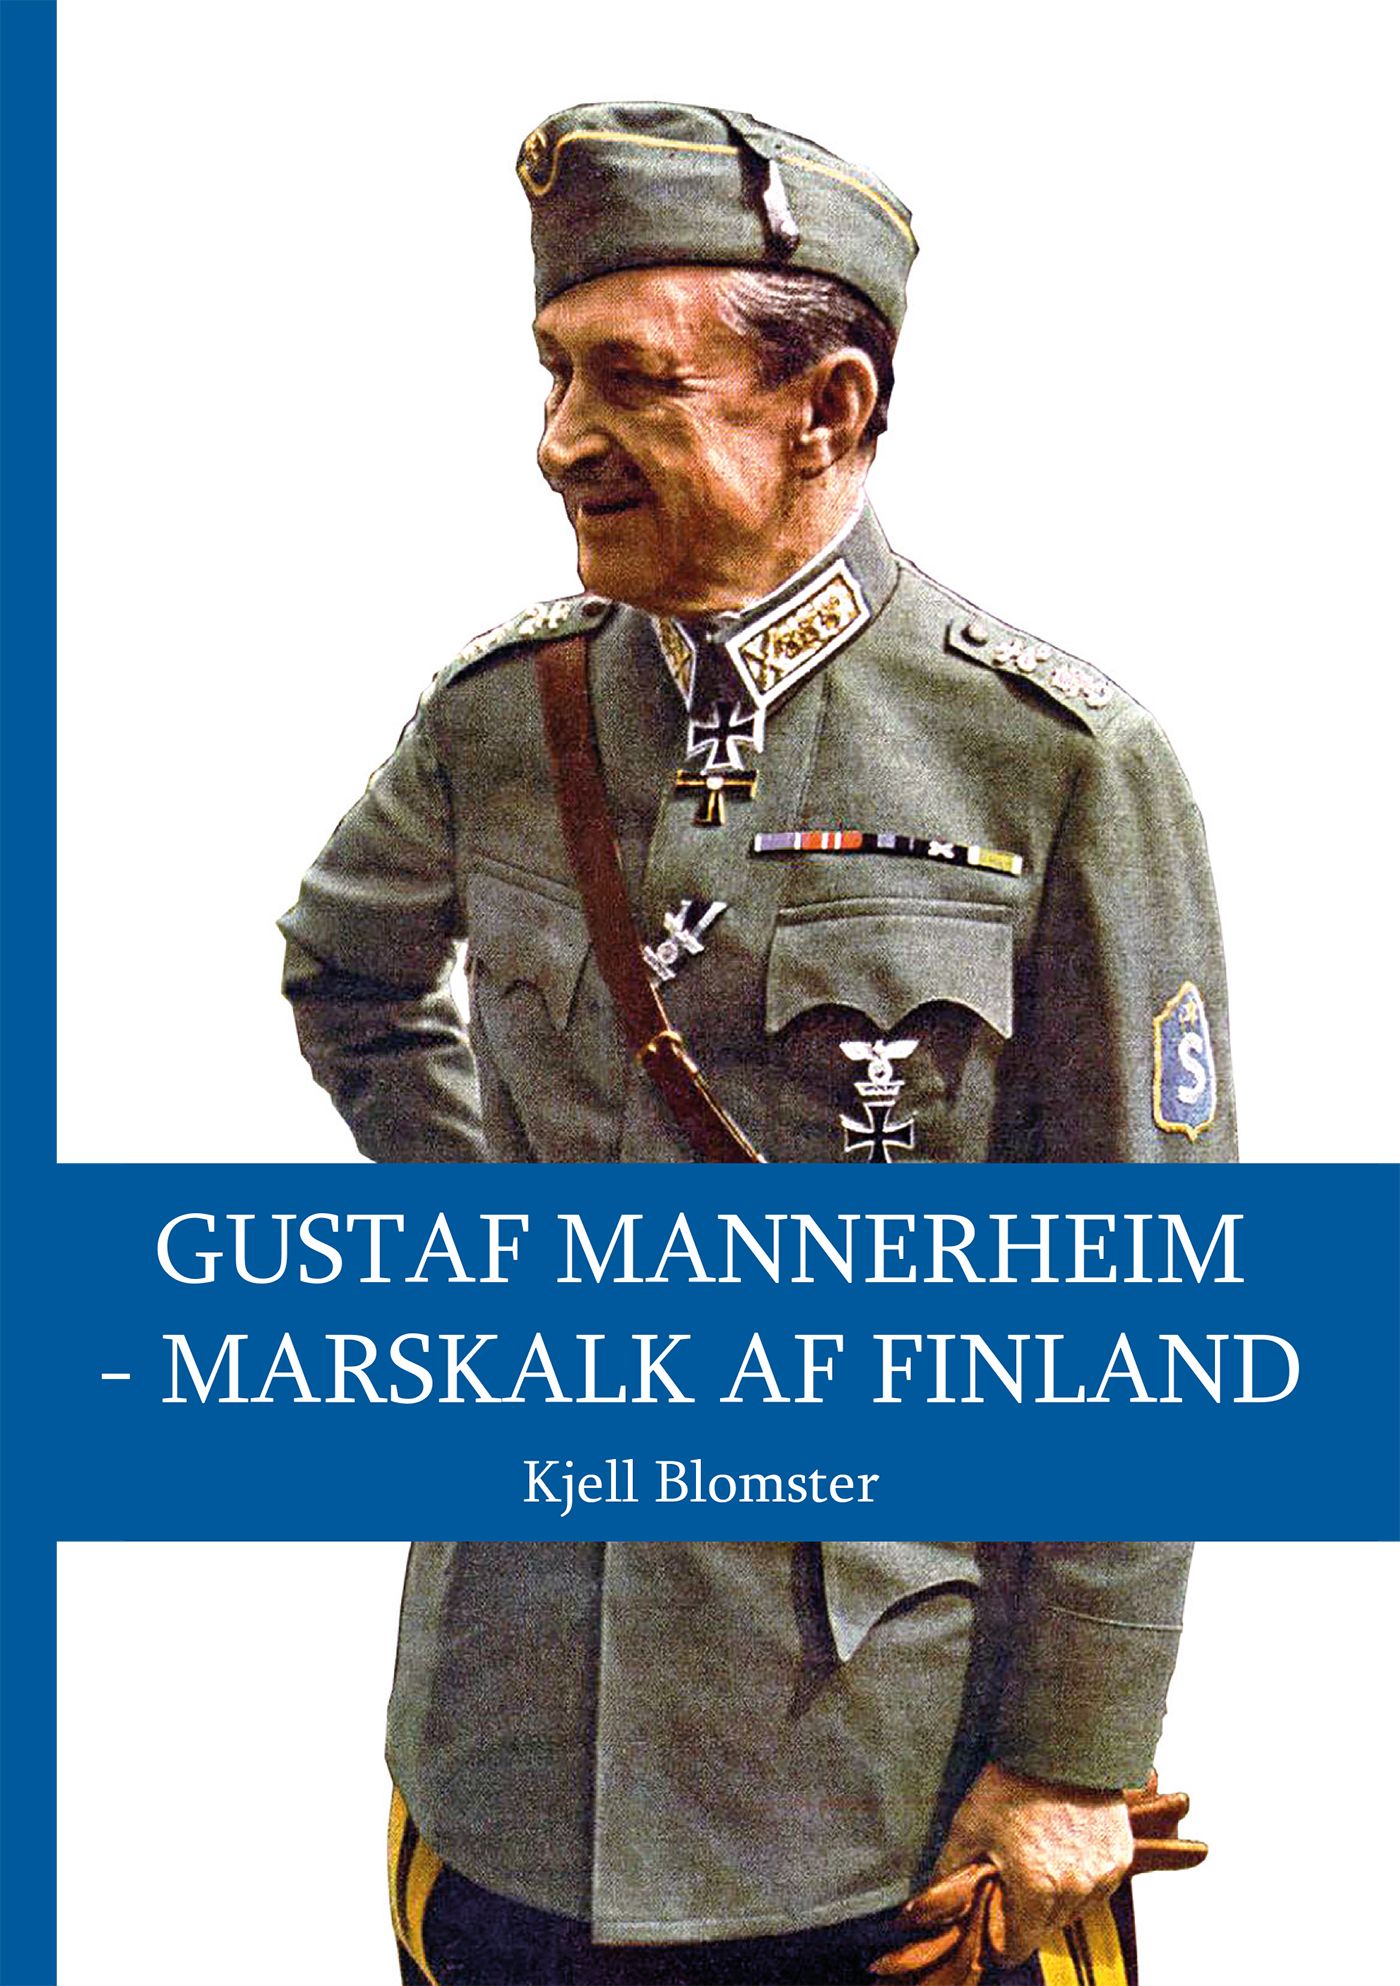 Gustaf Mannerheim - Marskalk af Finland, e-bog af Kjell Blomster